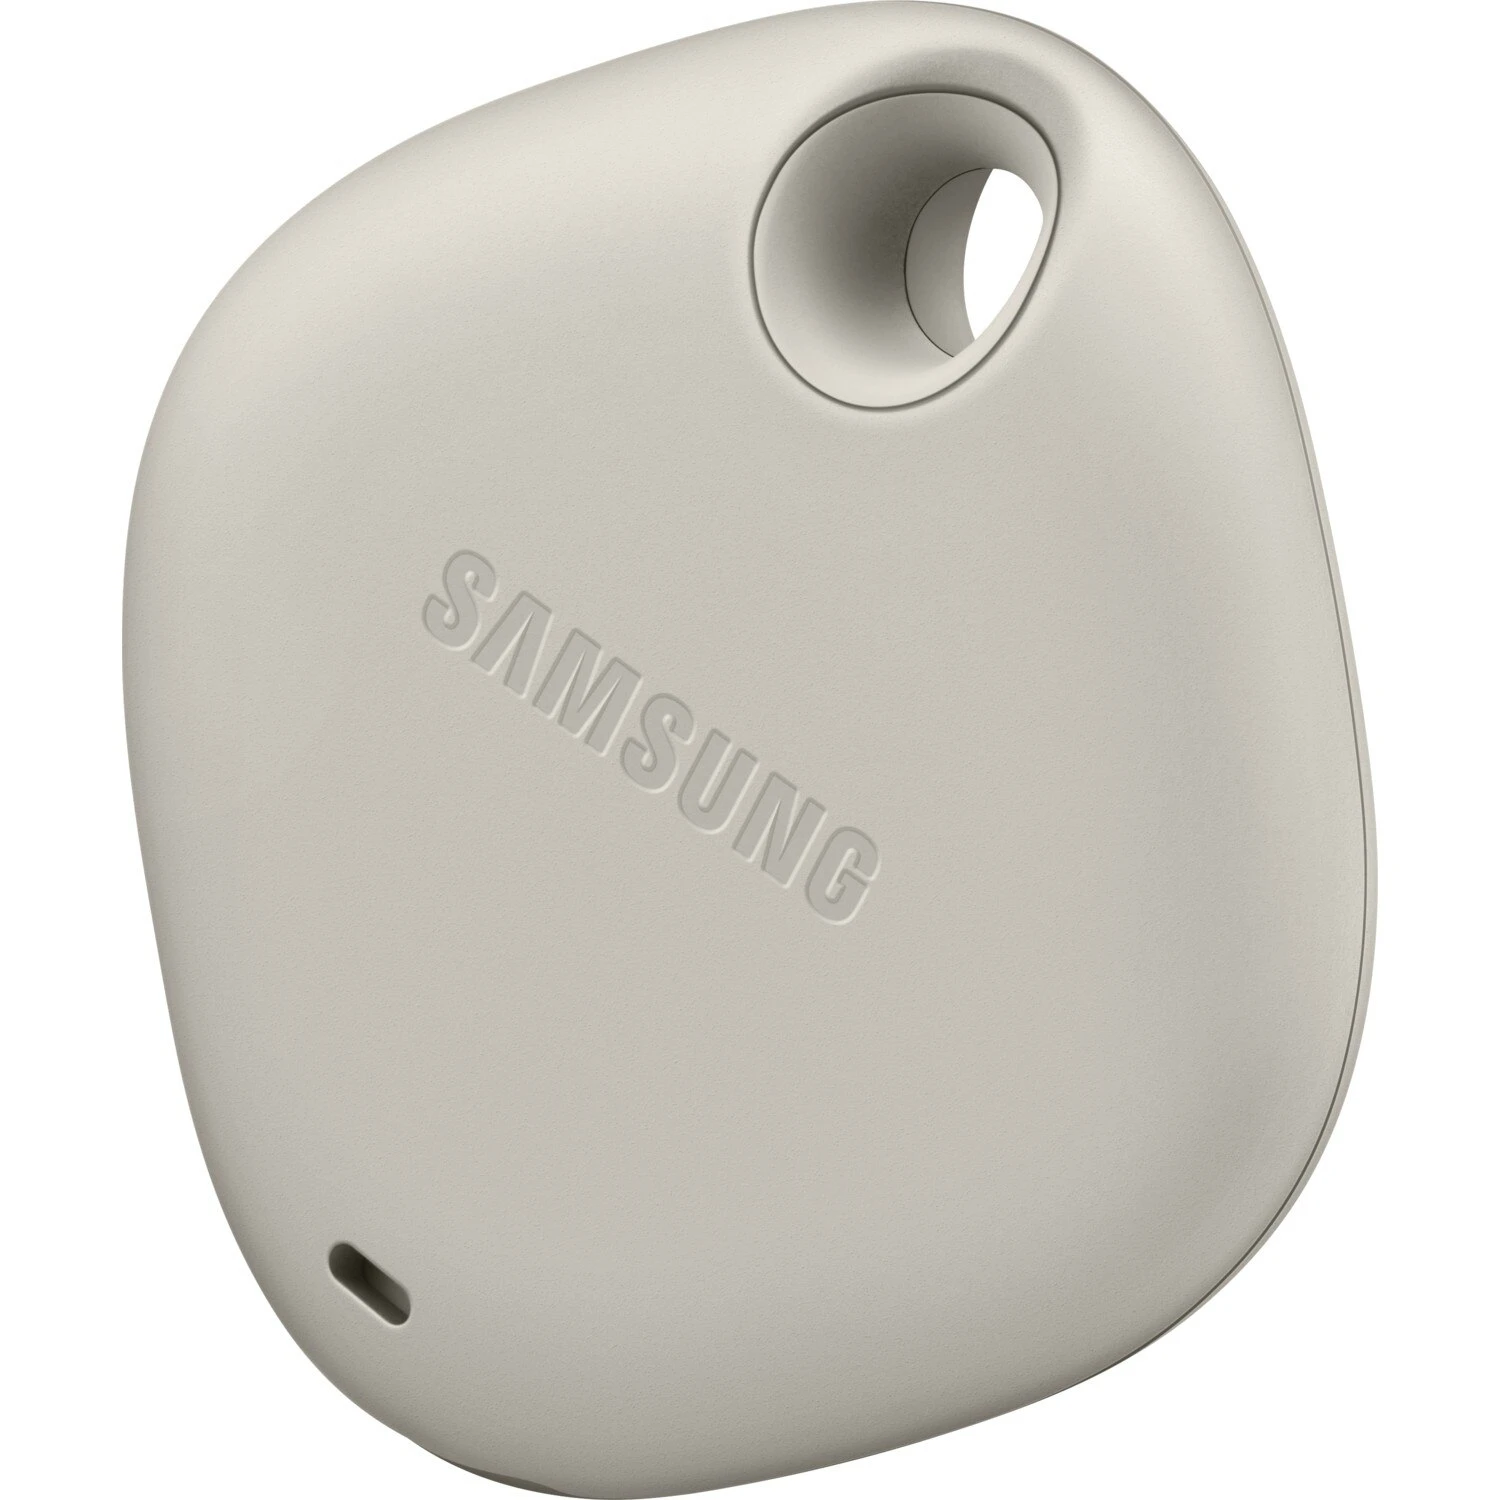 Samsung Smart Tag Gps бақылау құрылғысы EI-T5300 Сіздің сүйікті заттарыңыз қара және бежевый түстерді ысырап етеді Сурет 3